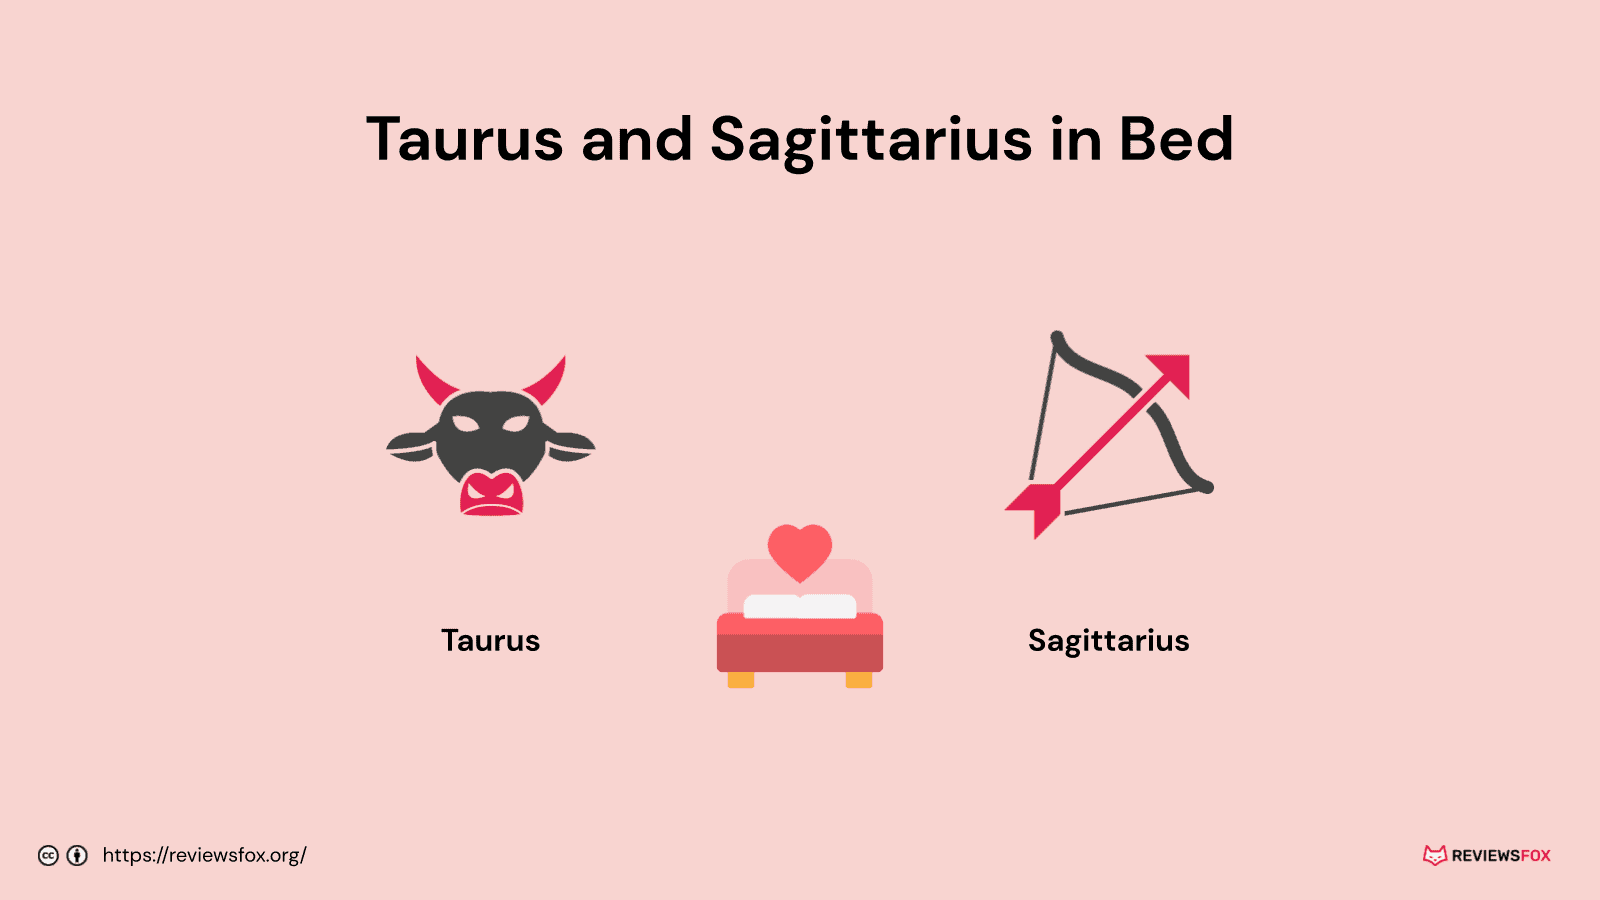 Taurus and Sagittarius in bed